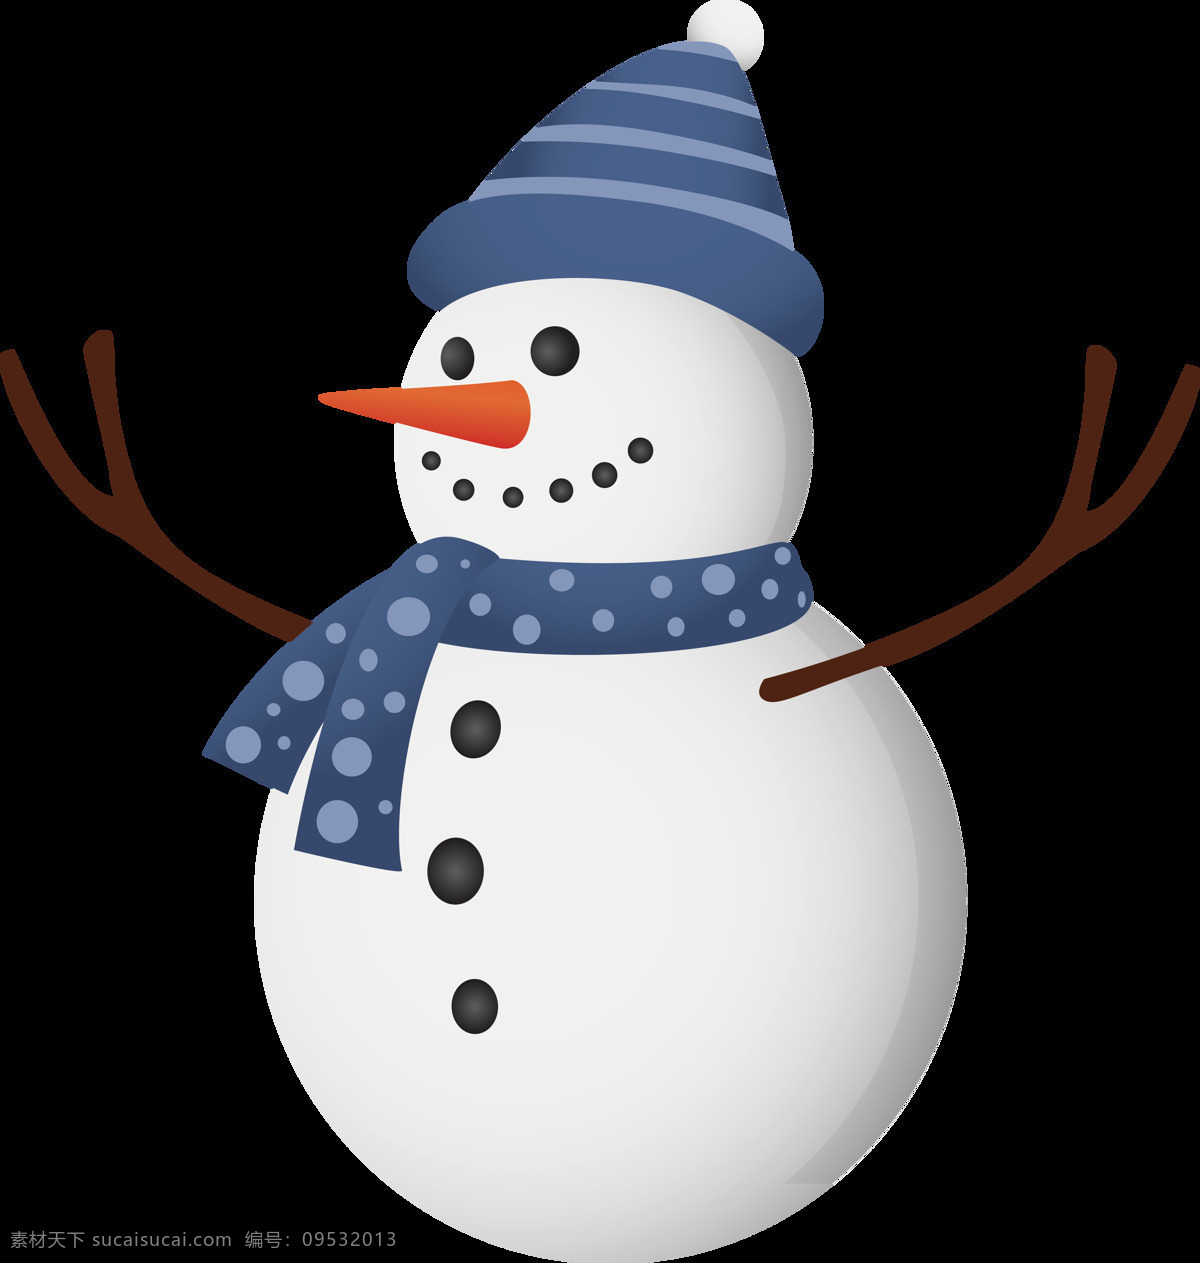 卡通 圣诞节 雪人 冬季元素 堆雪人 节日元素 卡通雪人 可爱雪人 设计素材 圣诞 圣诞png 圣诞雪人 雪人png 雪人元素